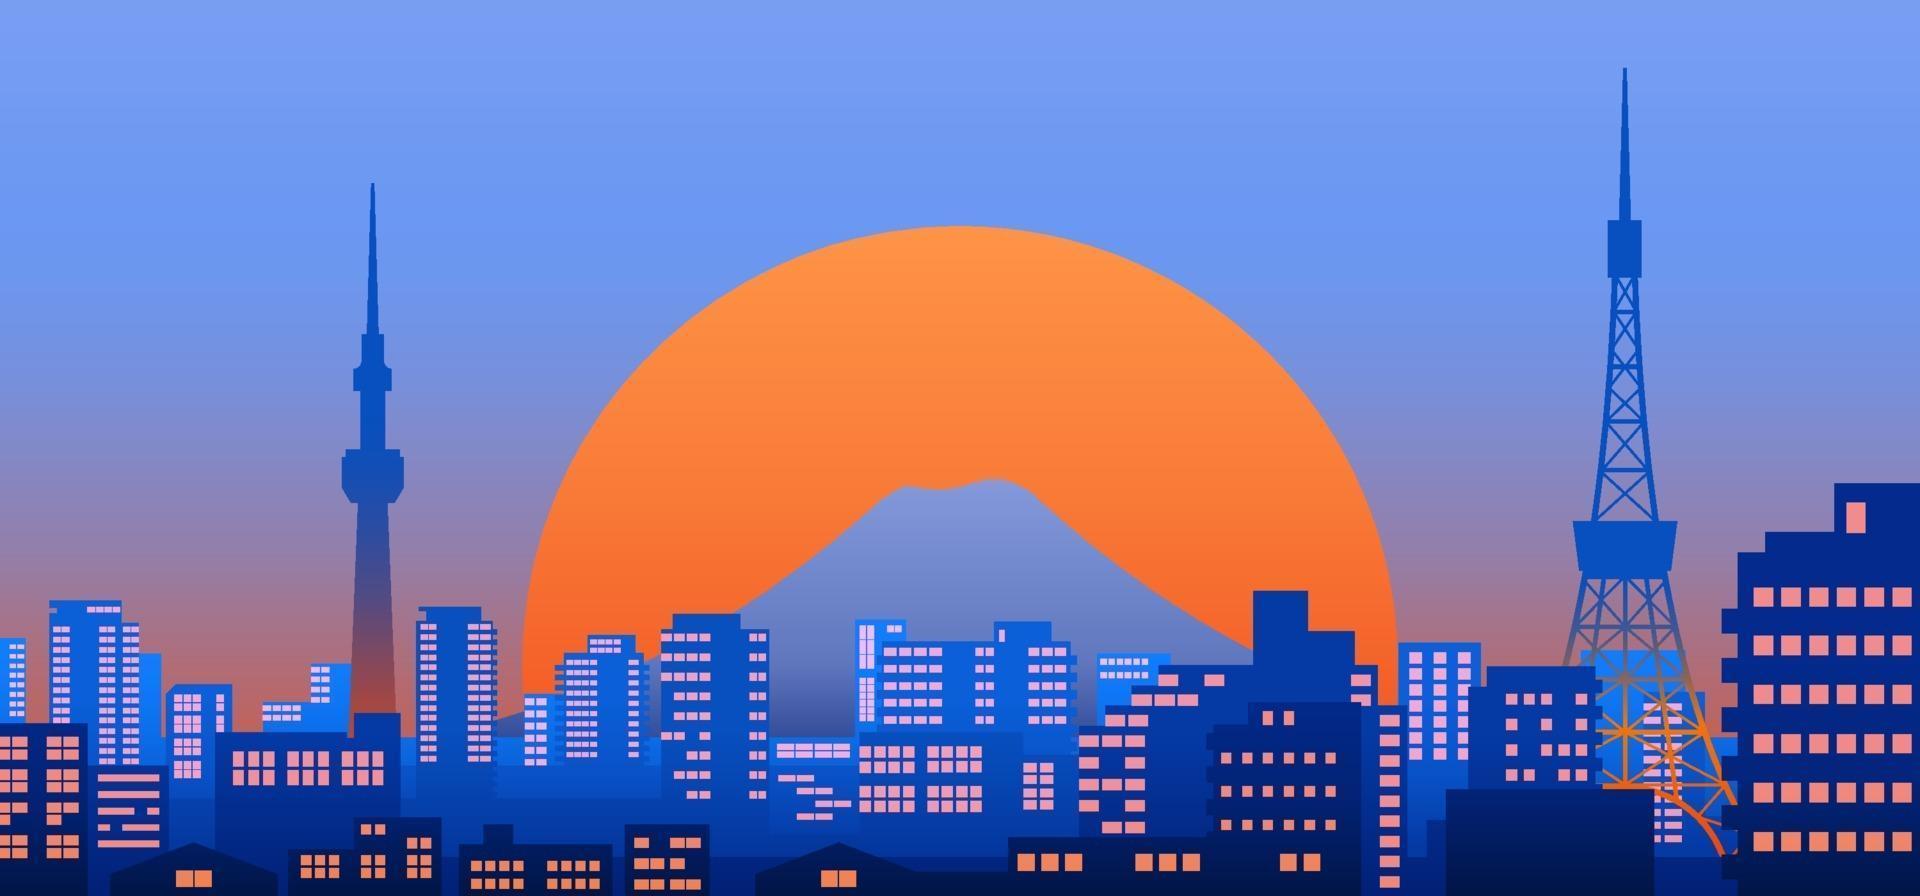 Vista de la ciudad de Tokio al atardecer o de noche con puesta de sol en el fondo, ilustración de vector de paisaje